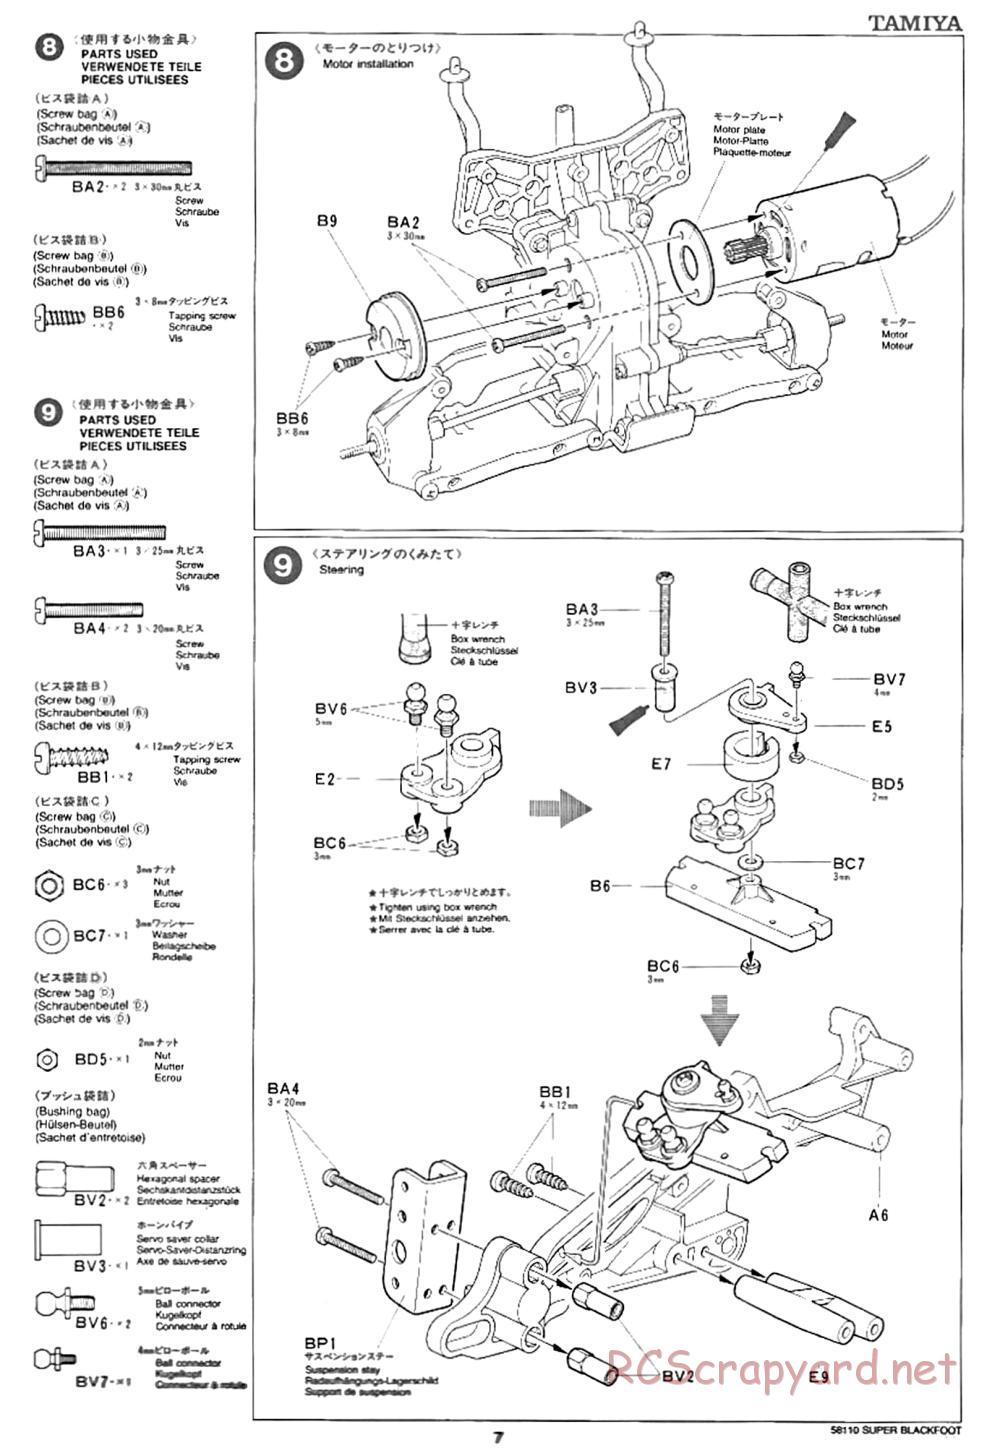 Tamiya - Super Blackfoot Chassis - Manual - Page 7